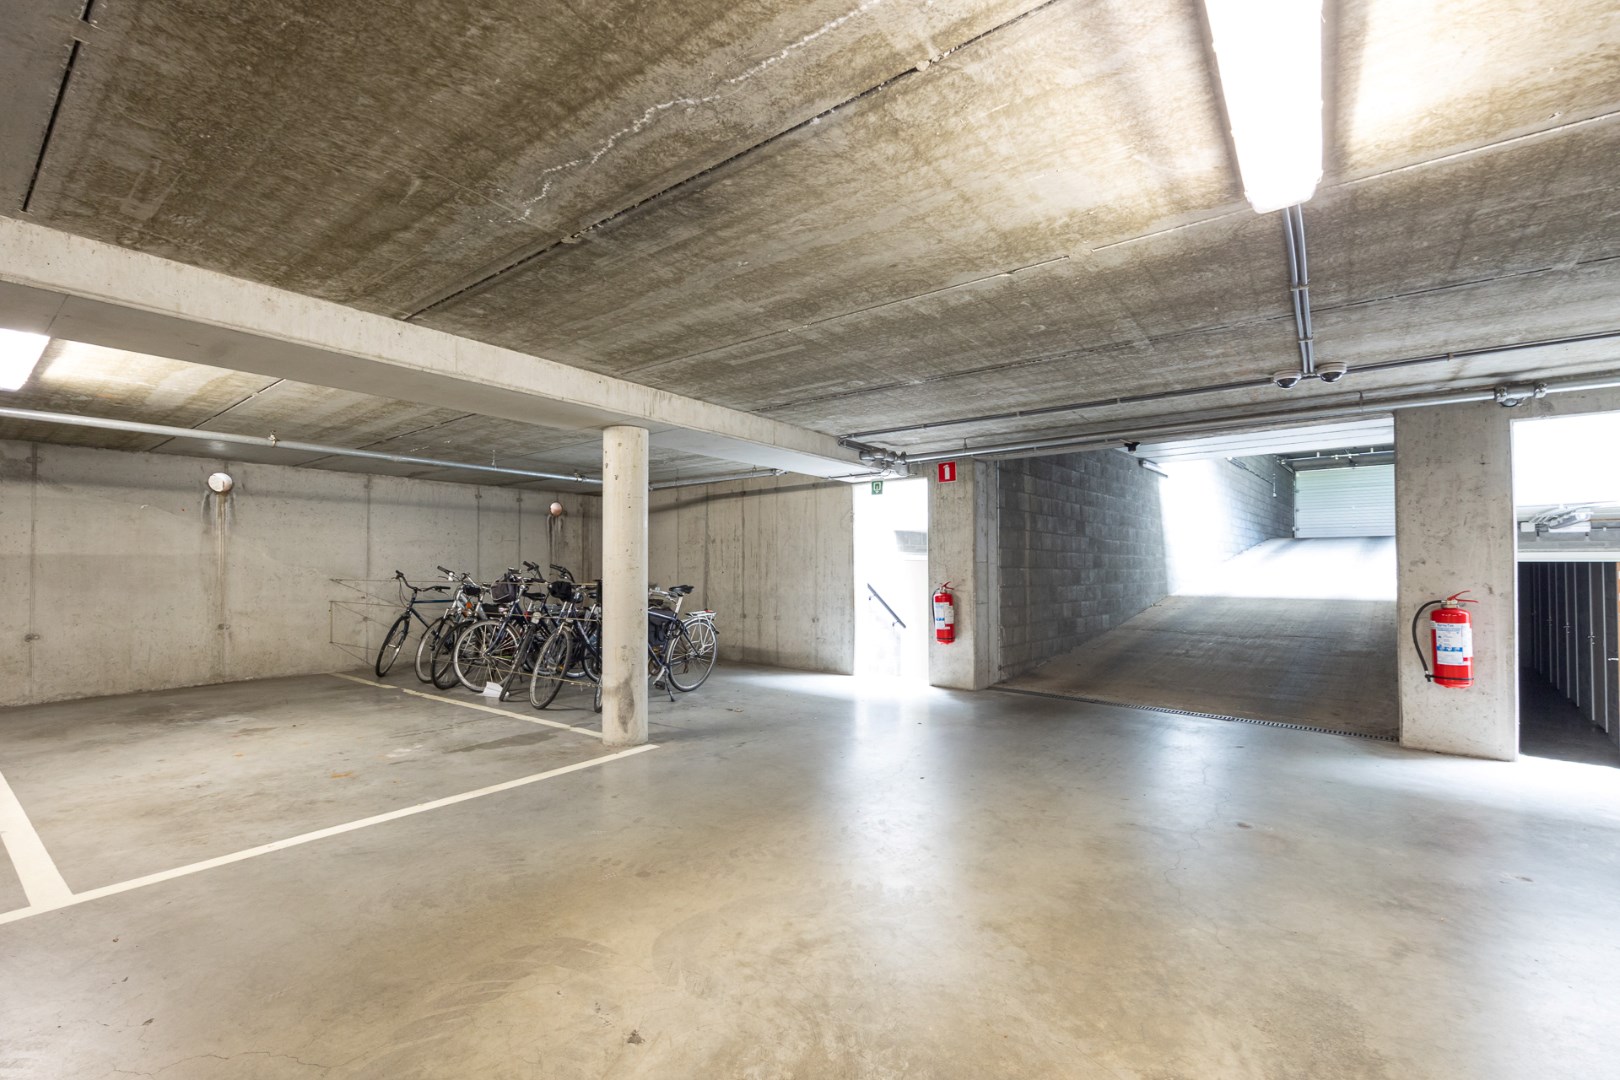 Parking / ondergrondse staanplaats te koop in Mechelen! 